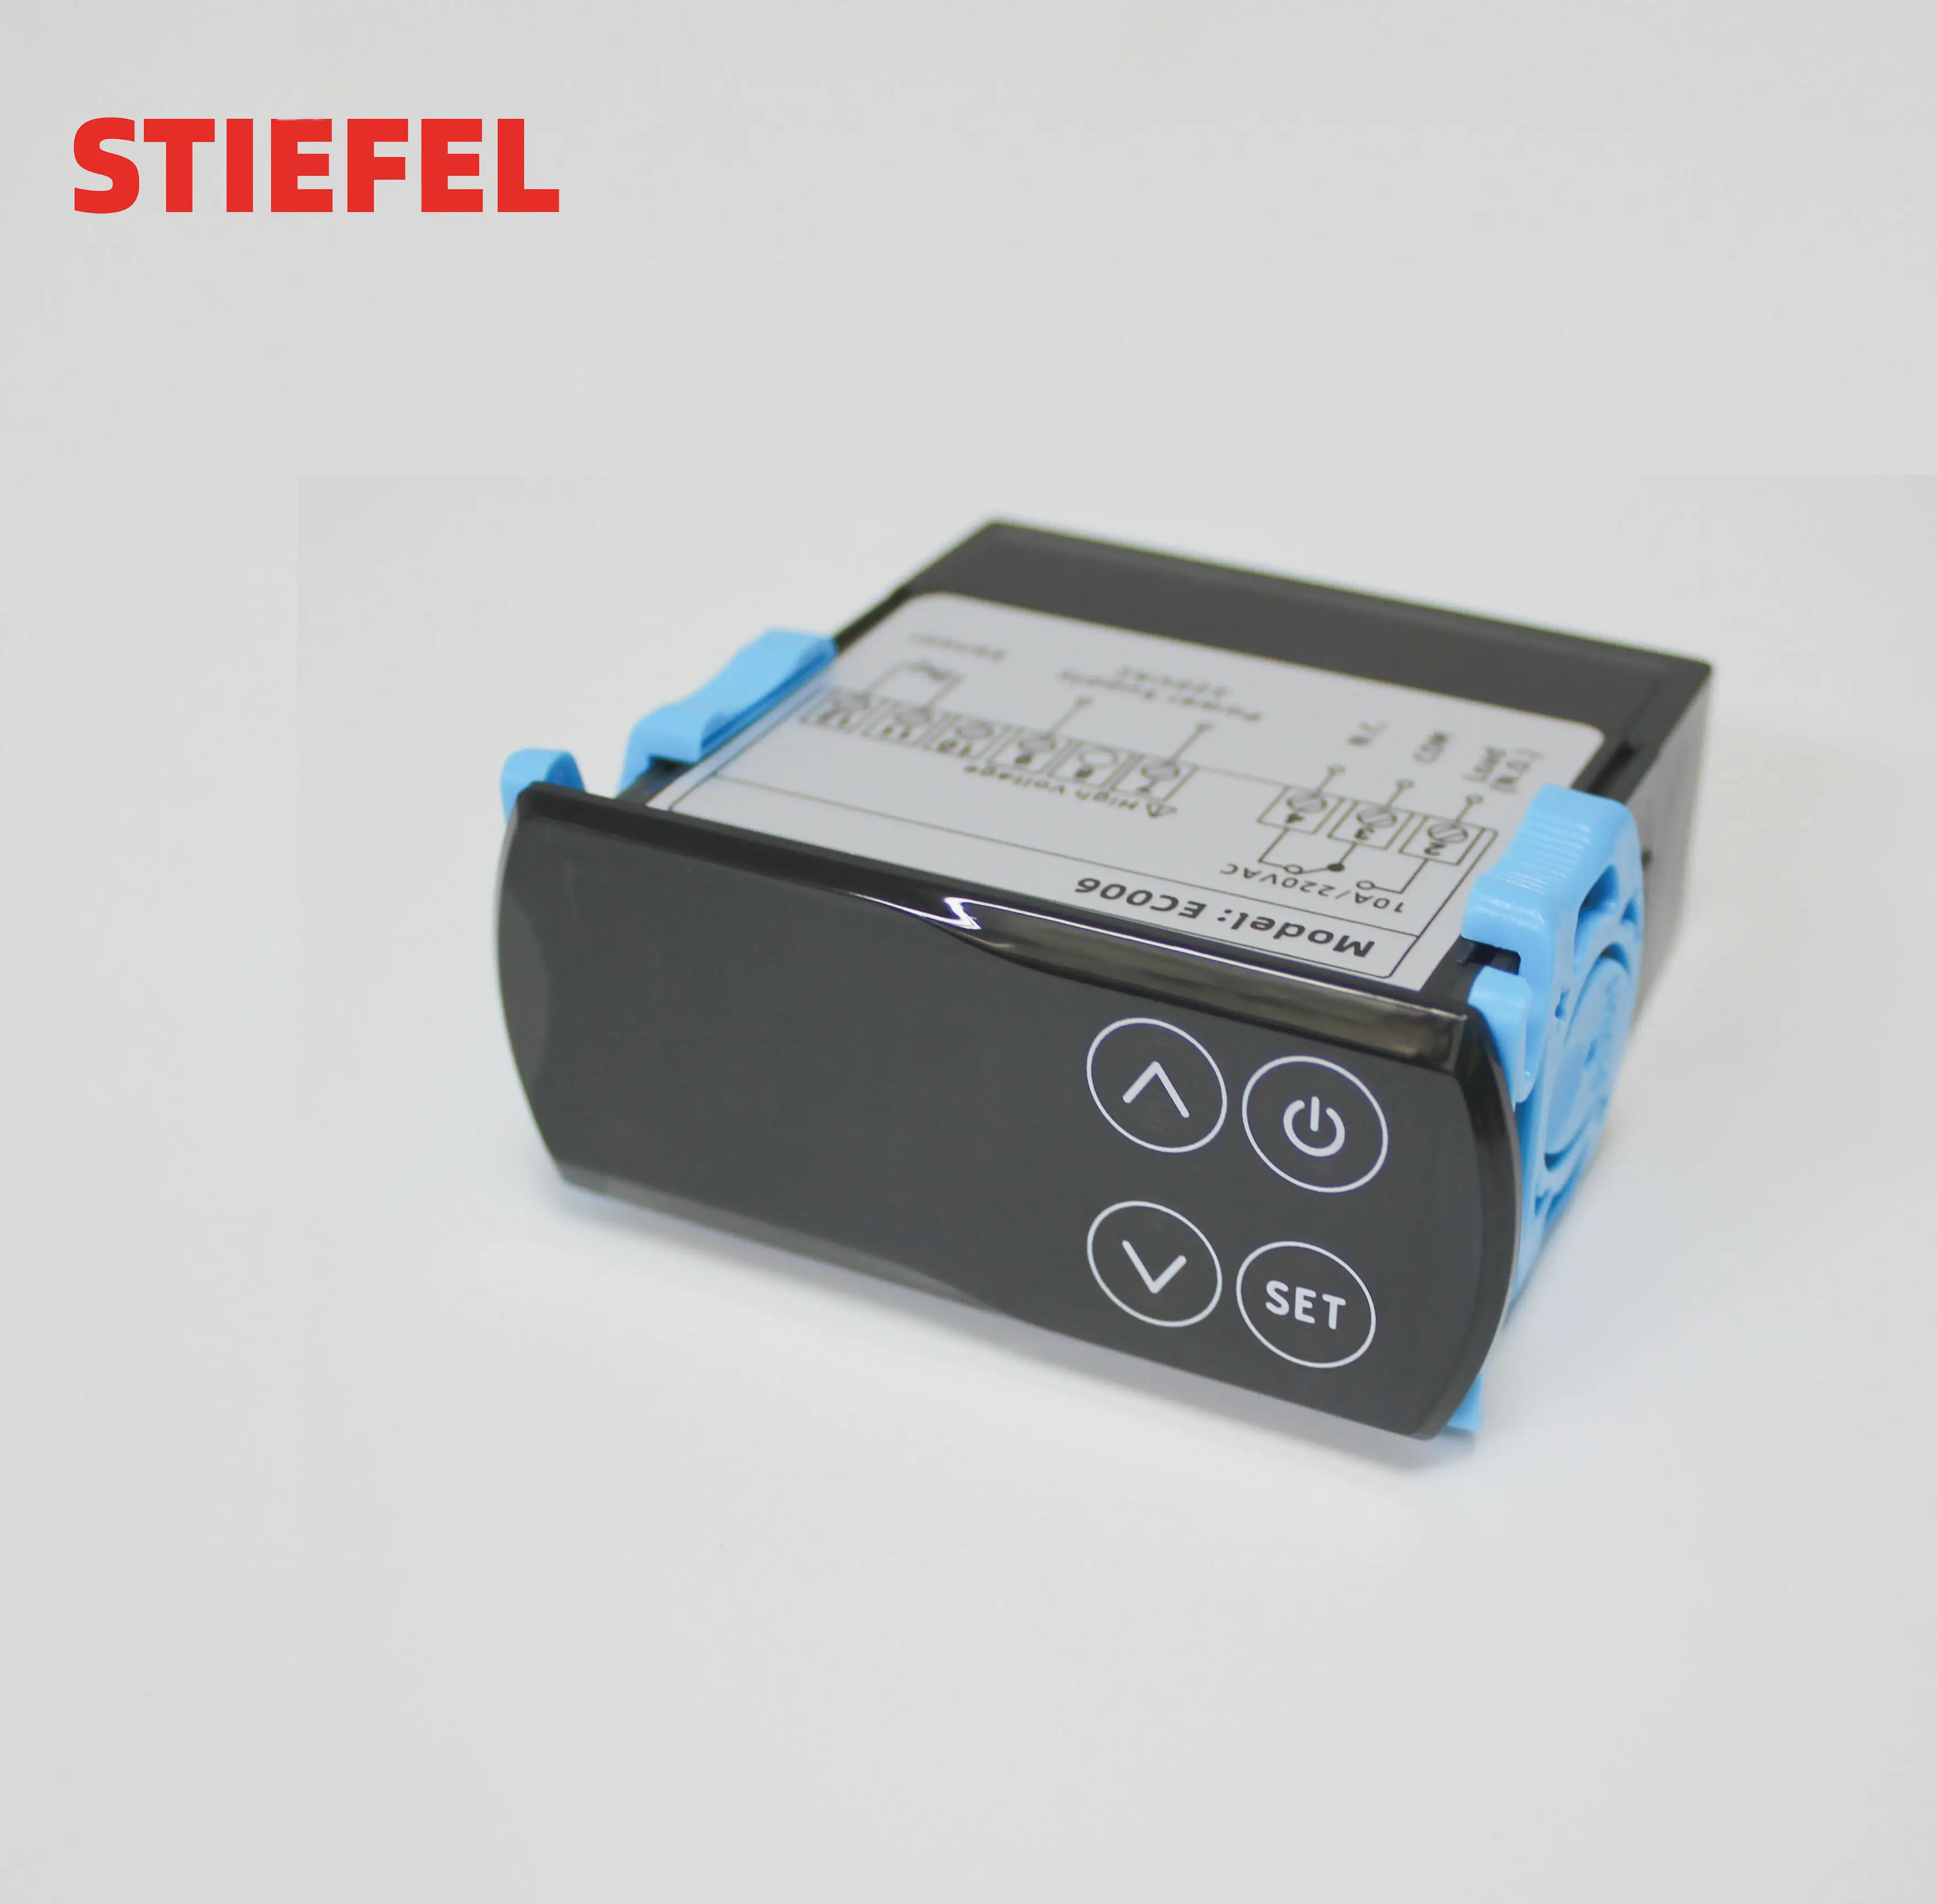 Controlador de temperatura electrónico STIEFEL 220V pantalla táctil digital controlador de temperatura de calefacción y refrigeración